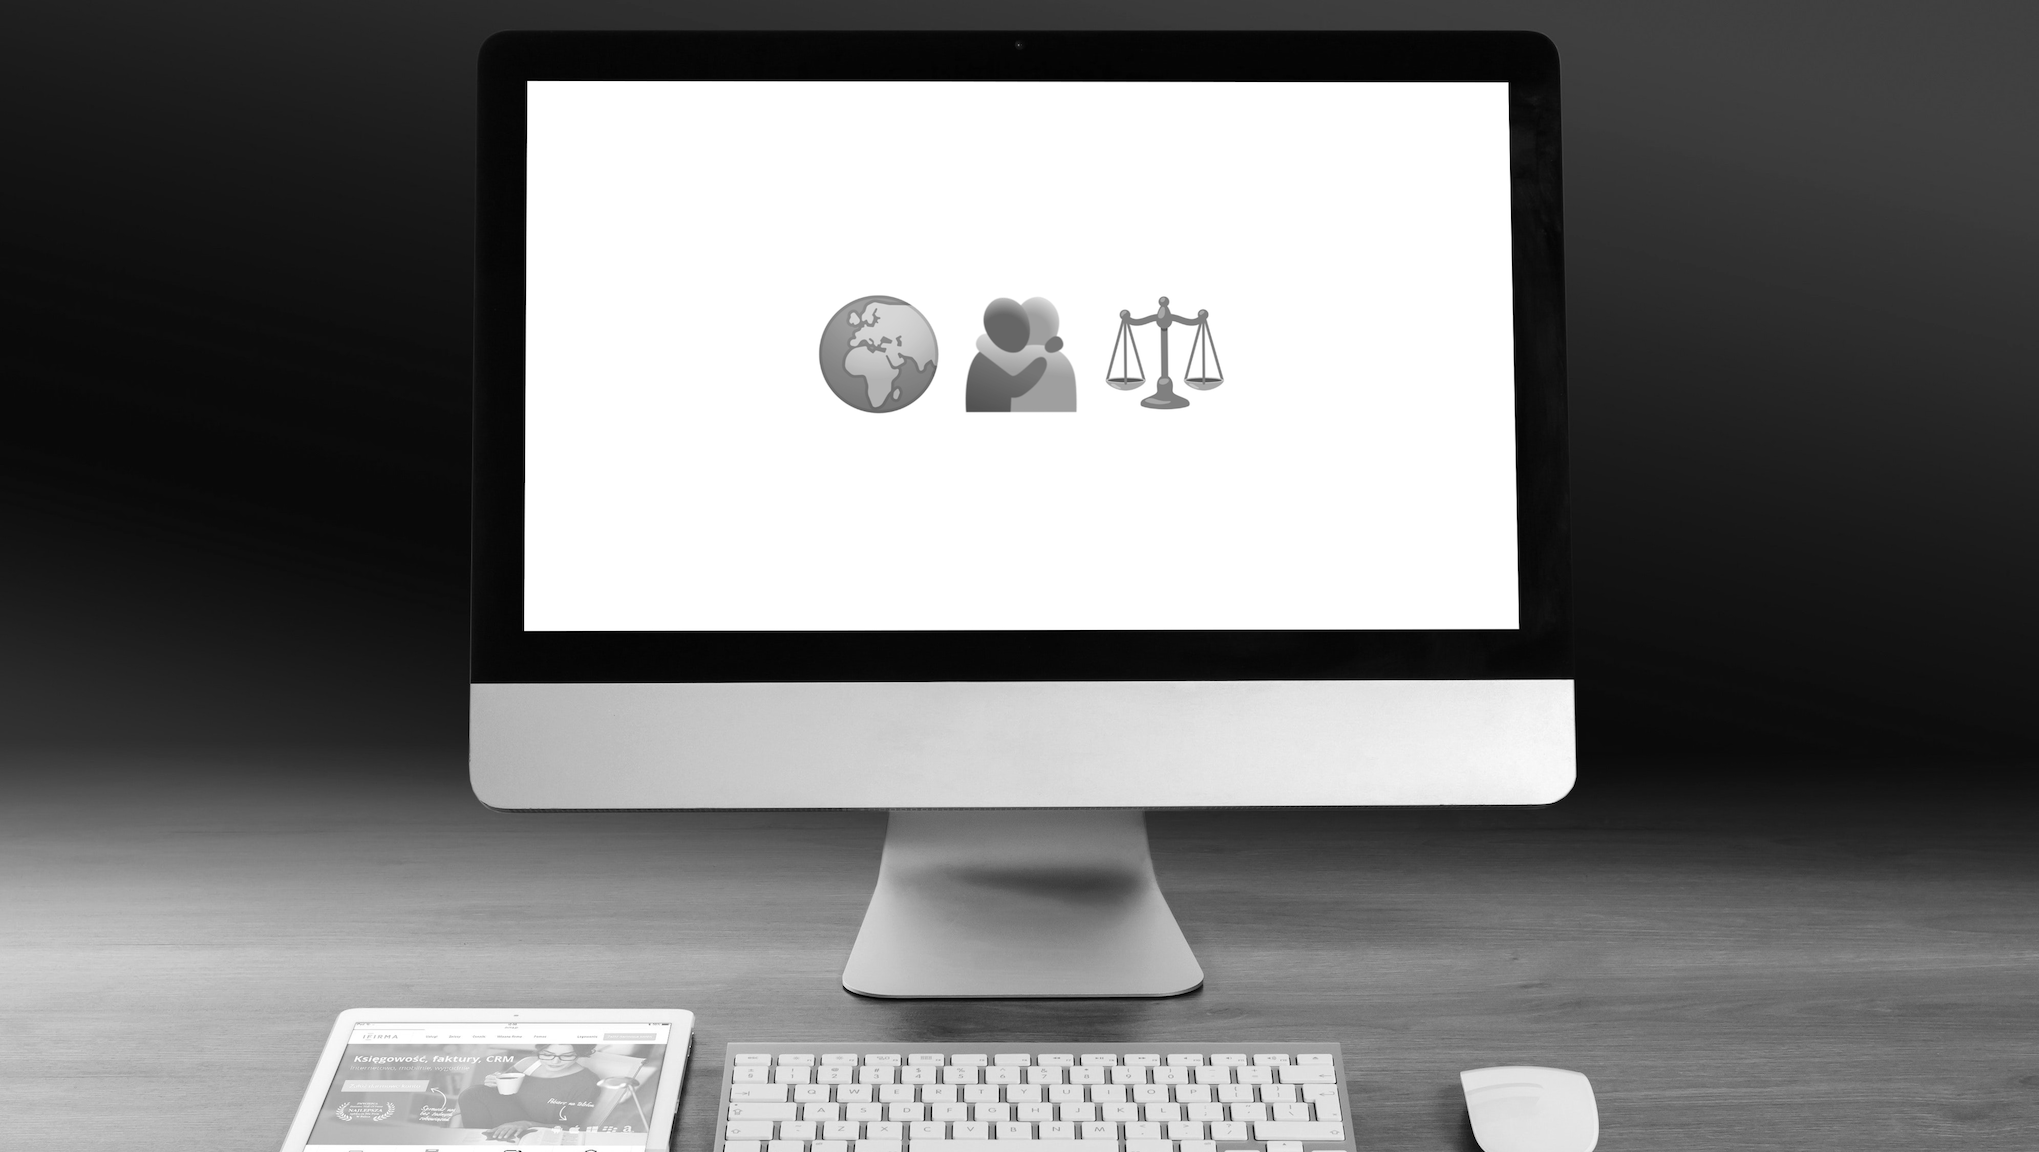 Bild von einem Desktop-Monitor, davor Keyboard, Maus und Tablet. Auf dem Bildschirm sind drei Emojis zu sehen, die die ESGs symbolisieren sollen: Weltkugel, sich umarmende Menschen, Waage.